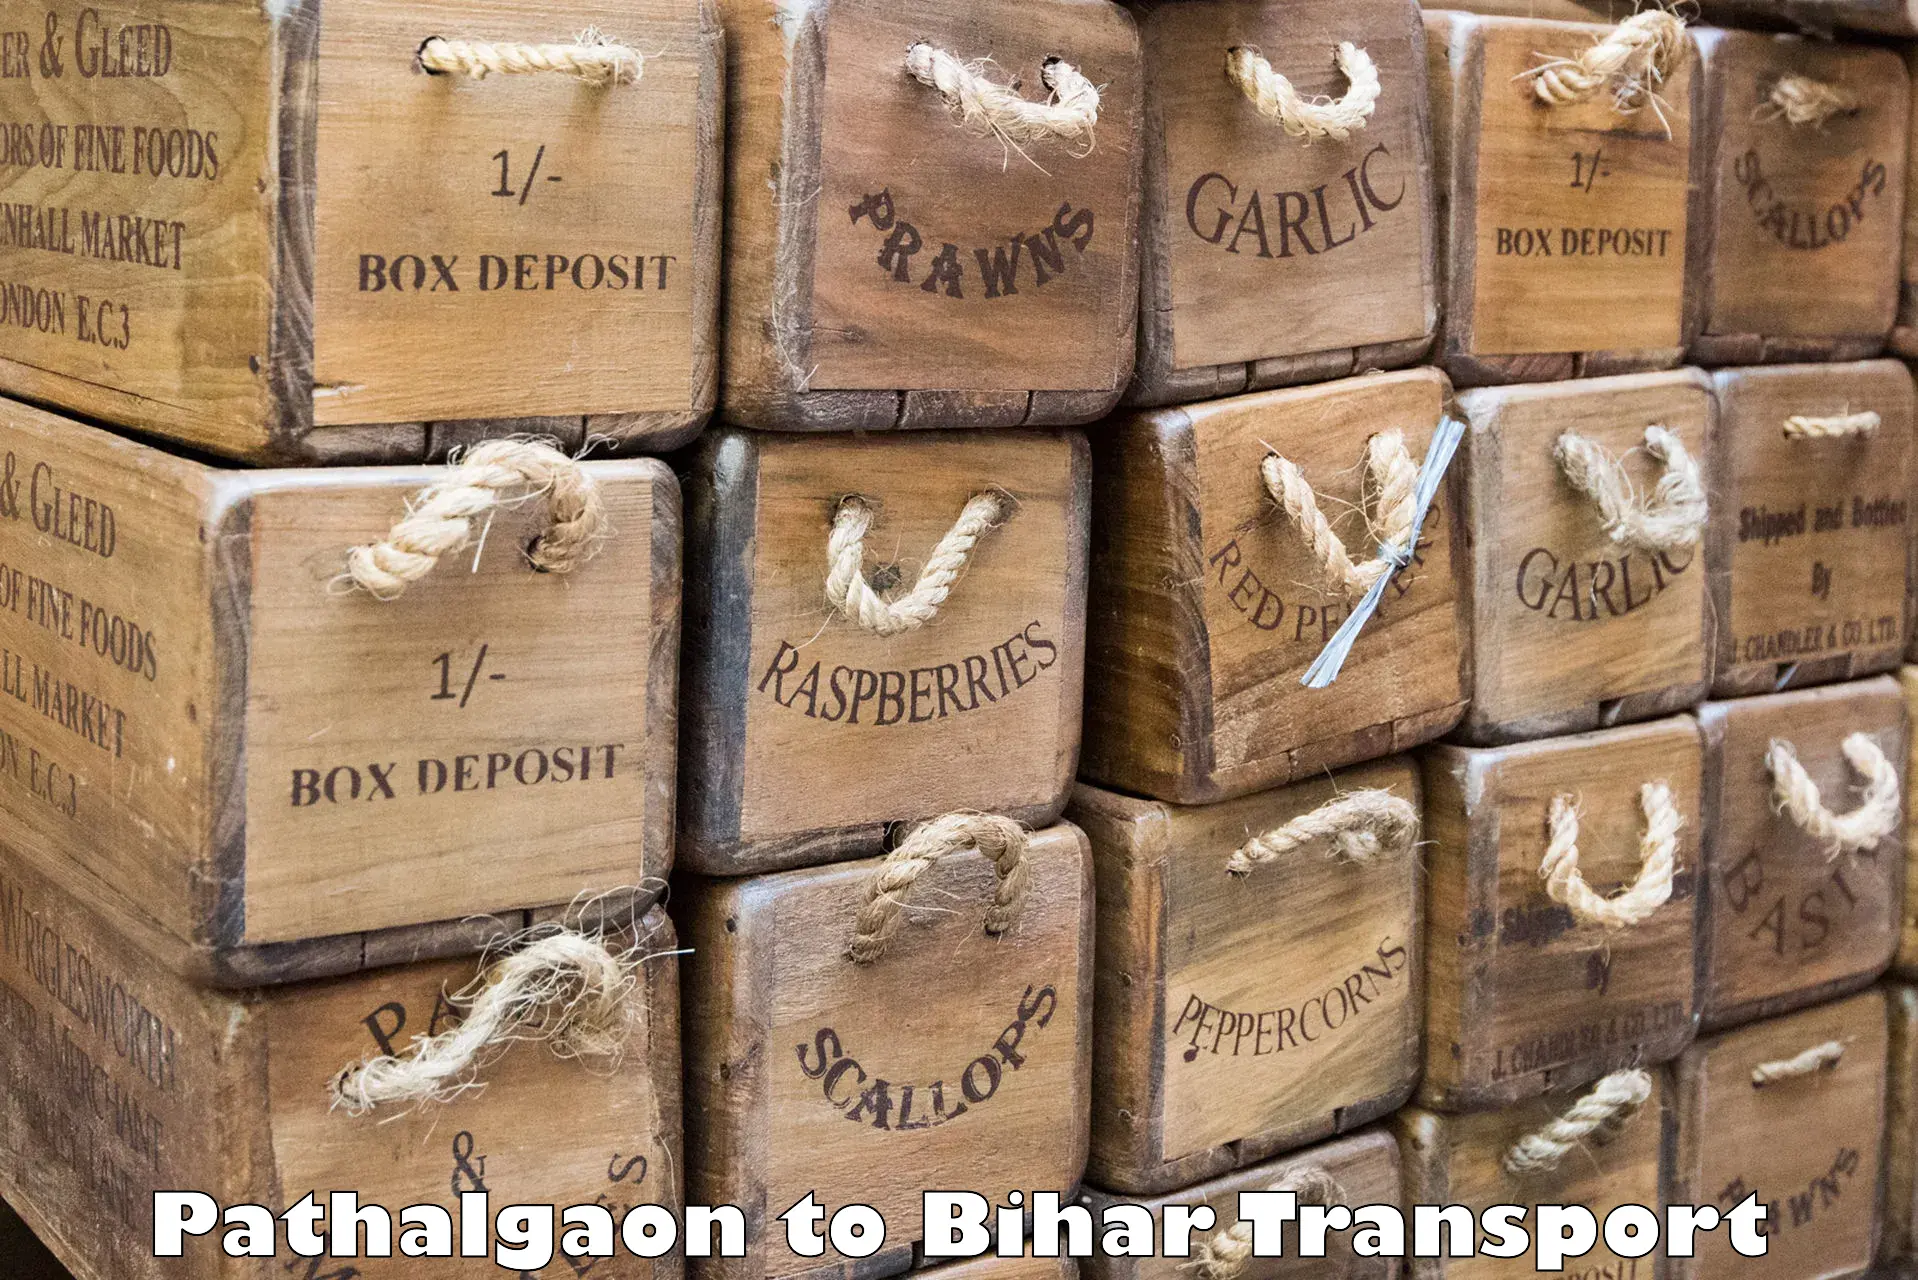 Express transport services Pathalgaon to Thakurganj